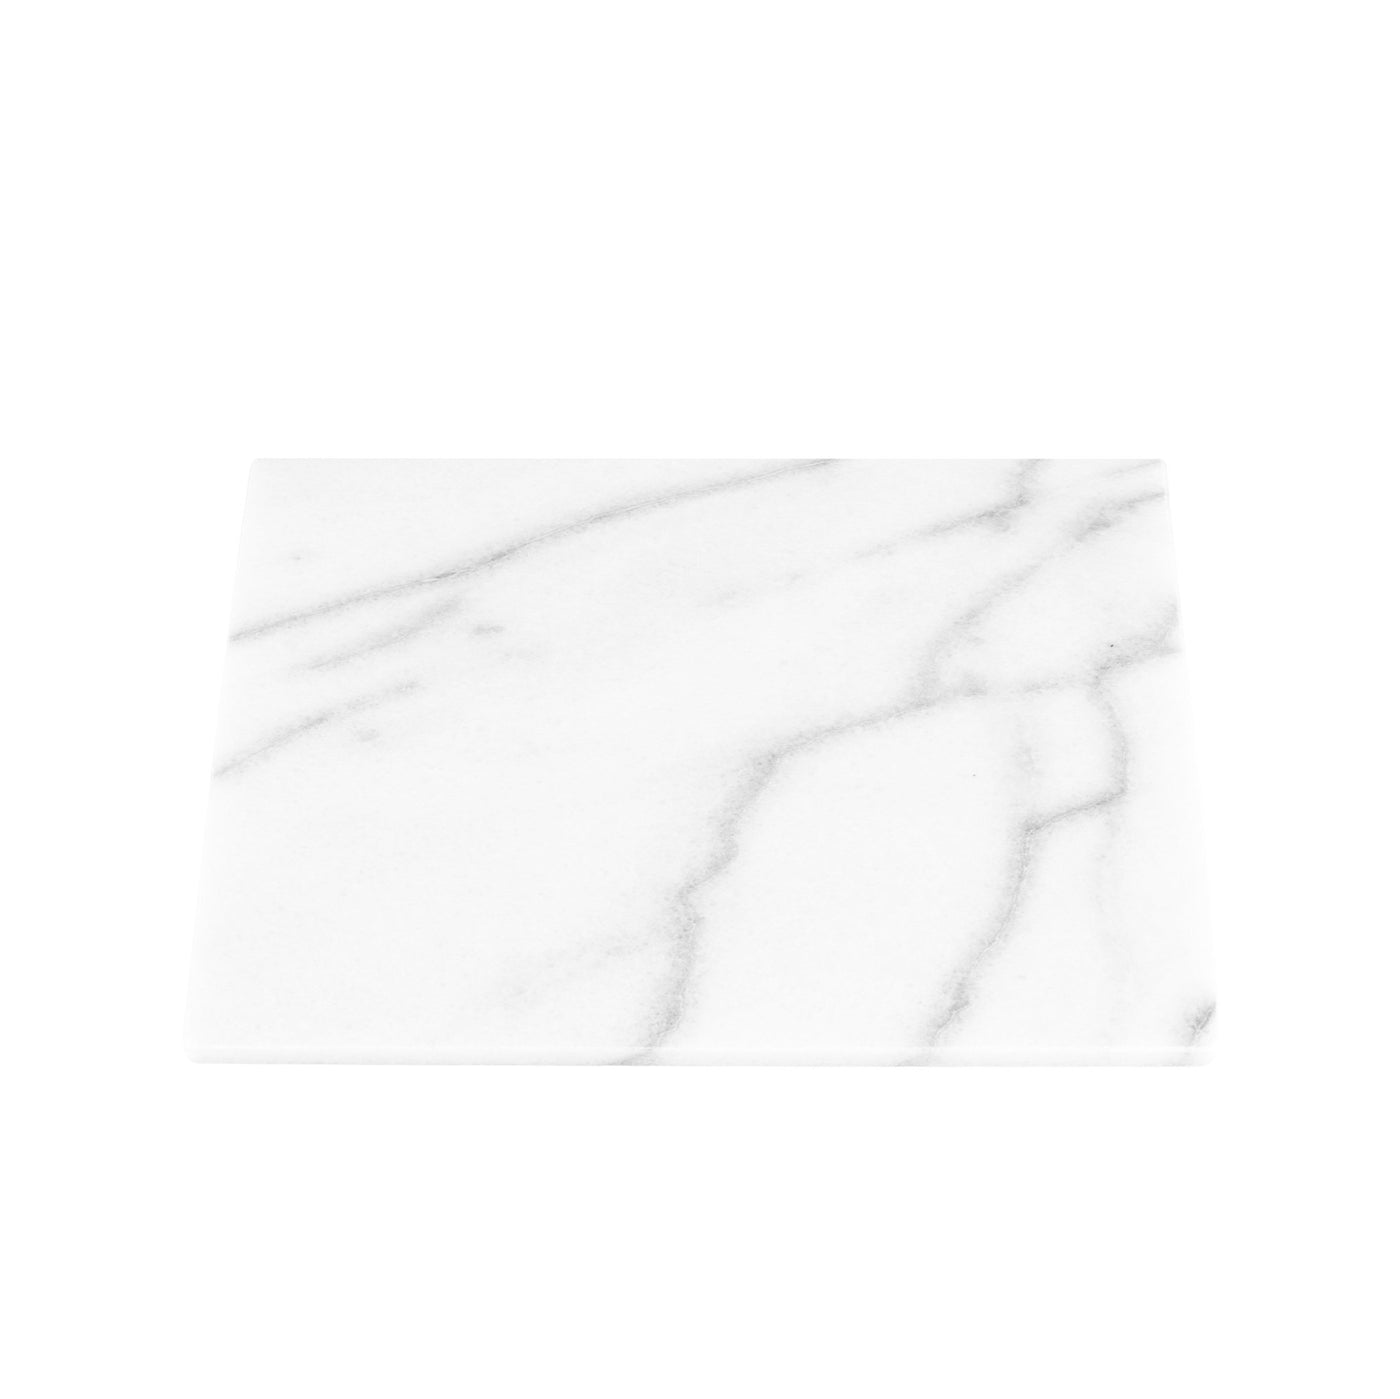 Stoned Marble Marmorplatte für die Küche zum Servieren oder als Ablage in Größe L wahlweise in Schwarz, Weiß oder Pink ca. L40xB40xH2cm ca. 10kg - Bitangel RENOVATE & FURNISH HOMES GmbH